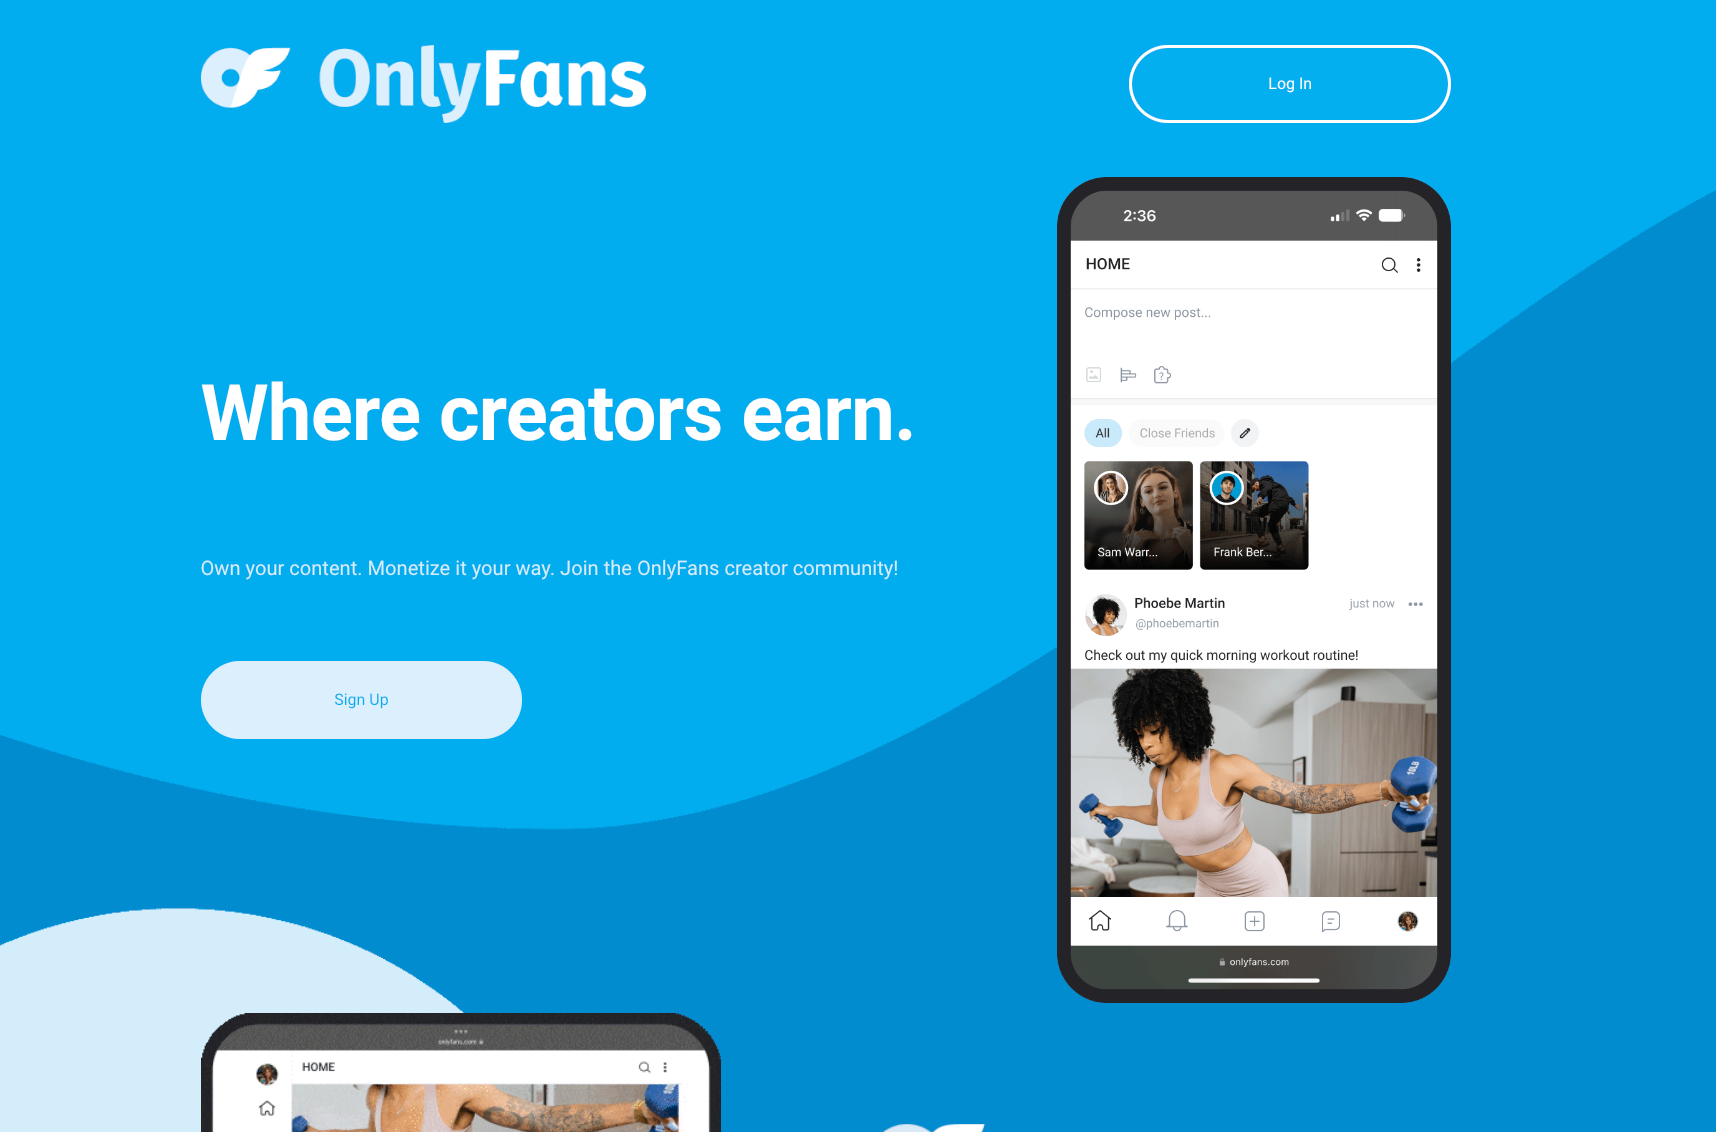 Image of onlyfans website